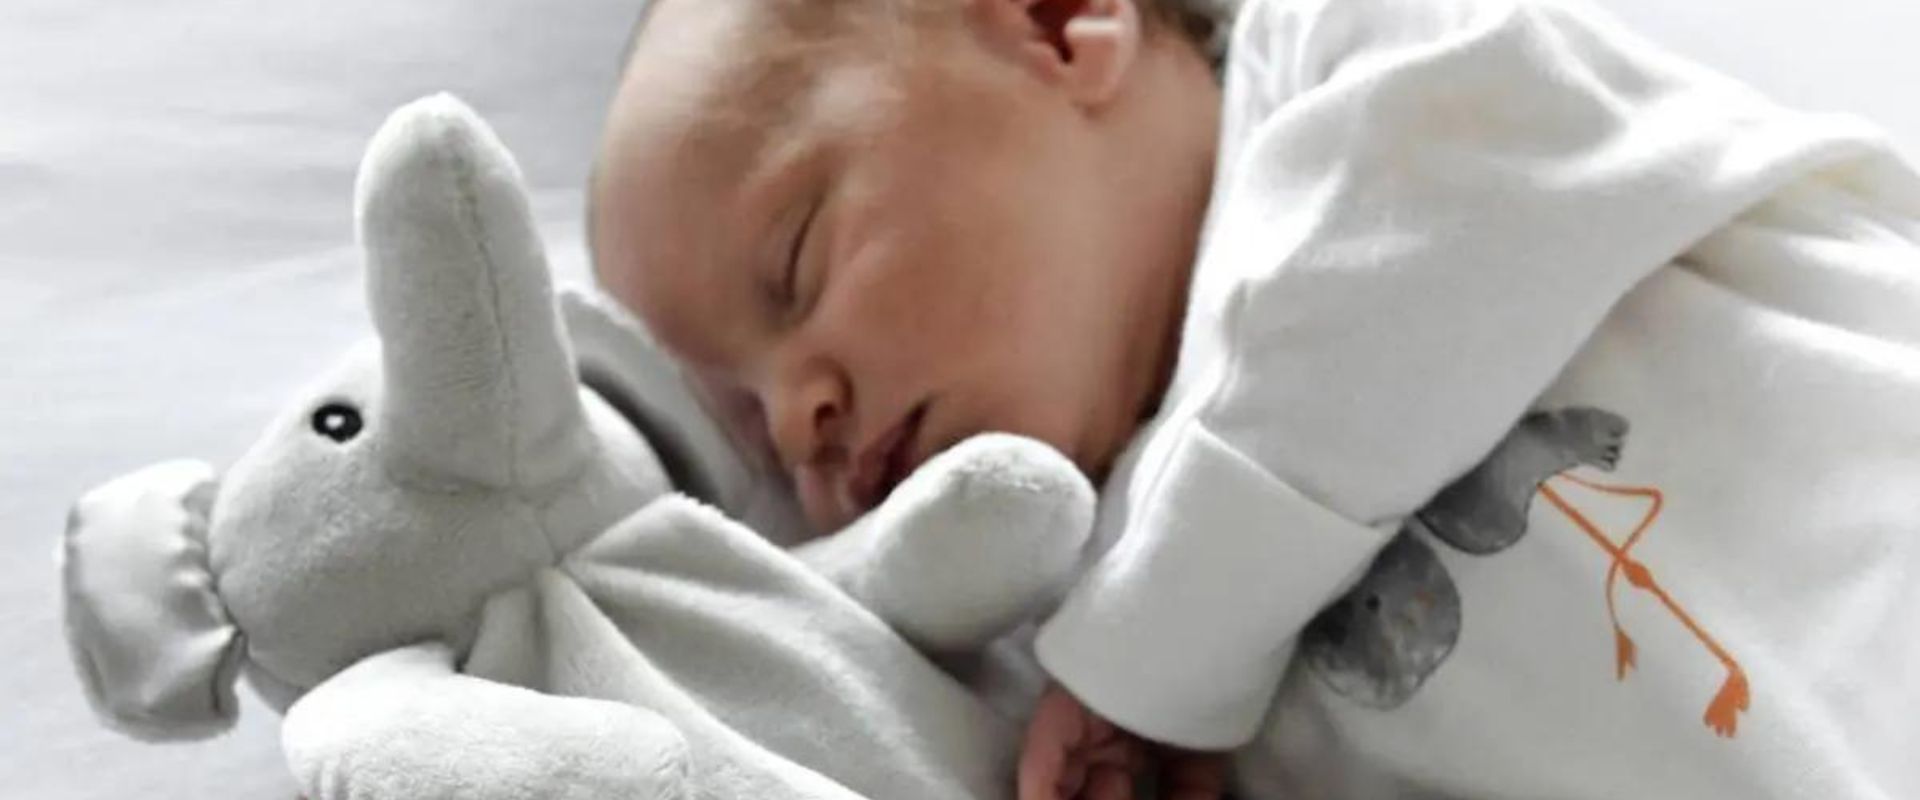 Regalos de Recuerdo de Nacimiento Peluches para Bebés Personalizados